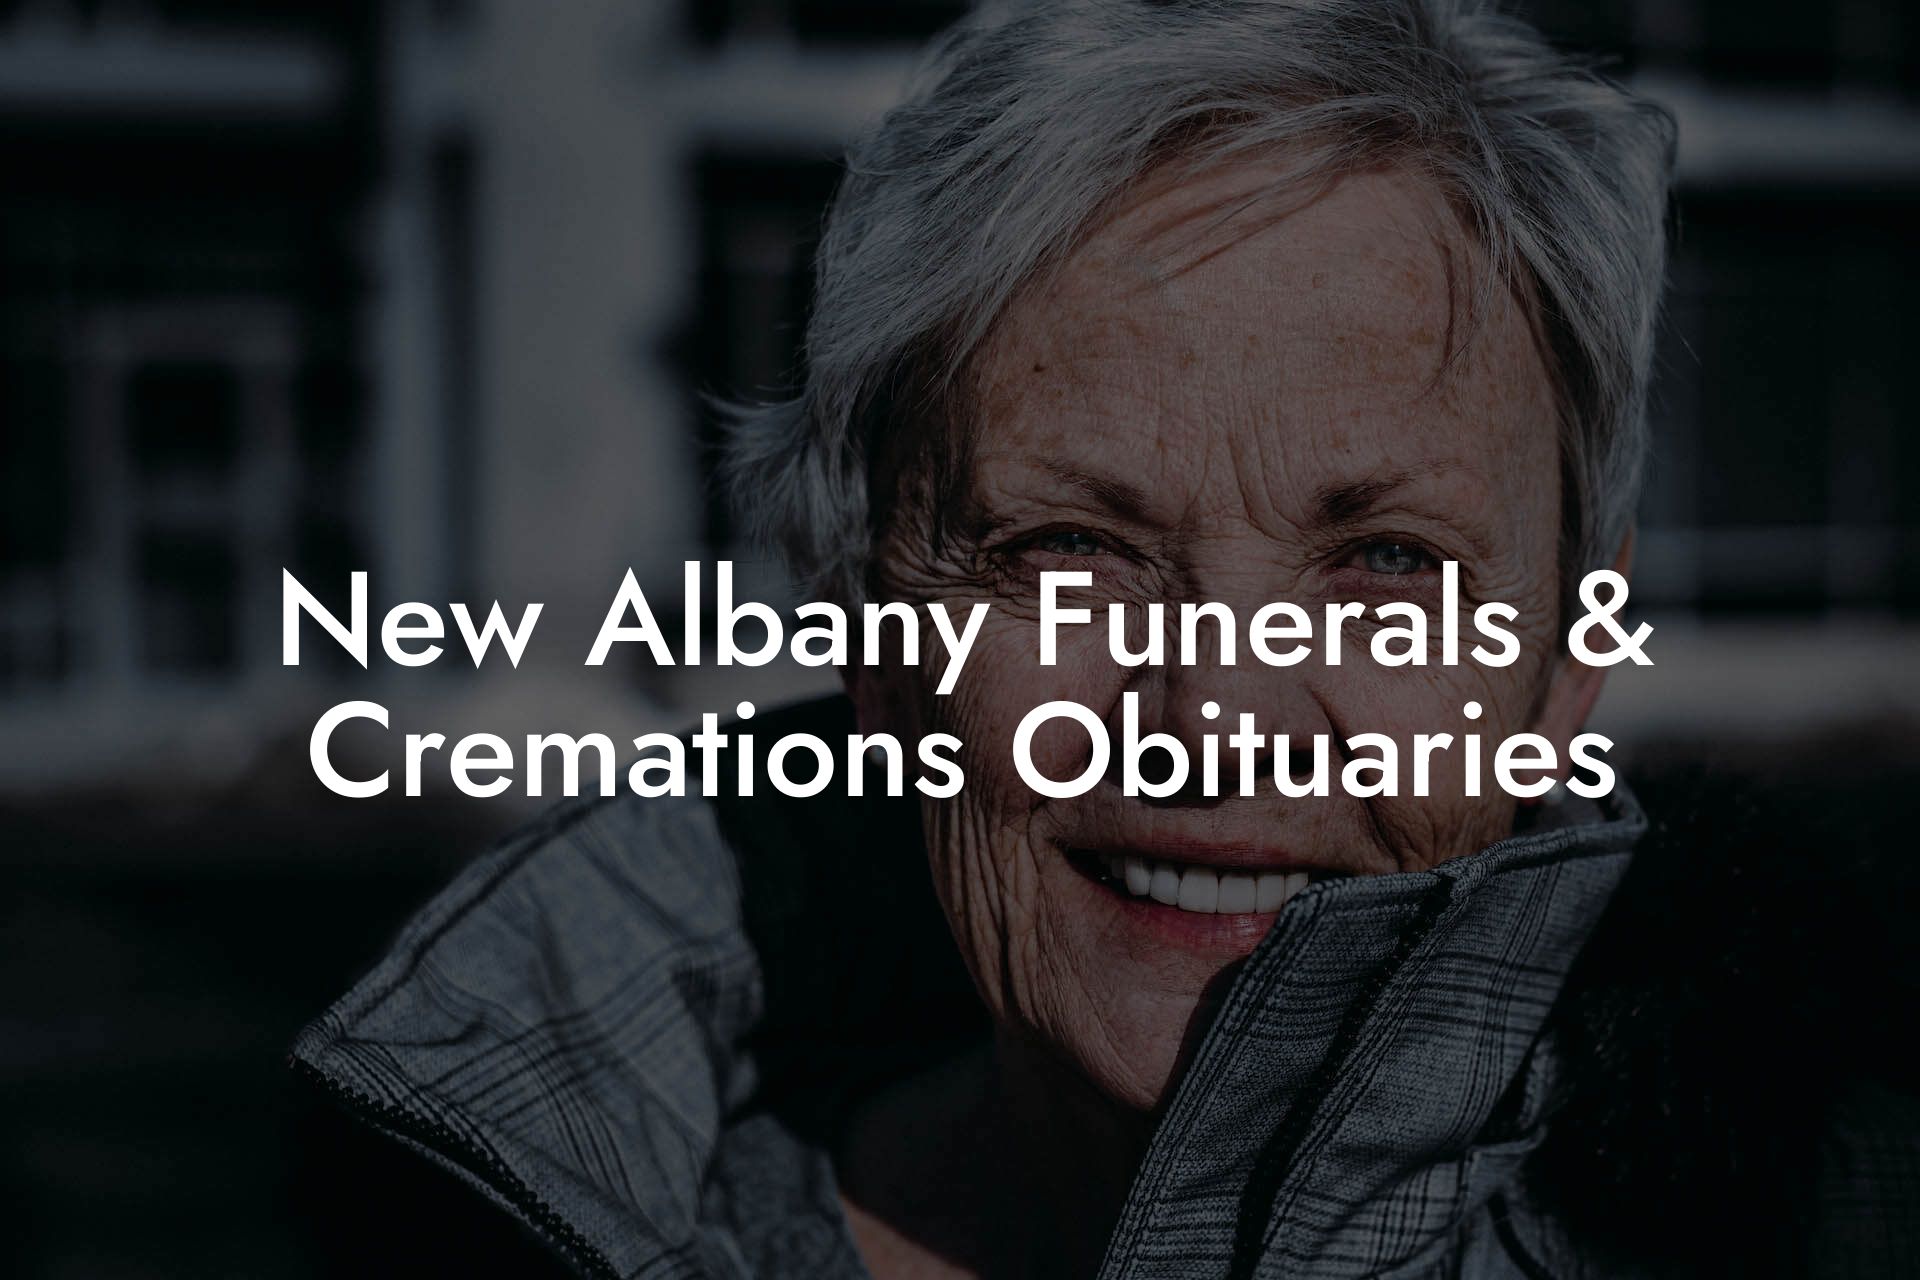 New Albany Funerals & Cremations Obituaries